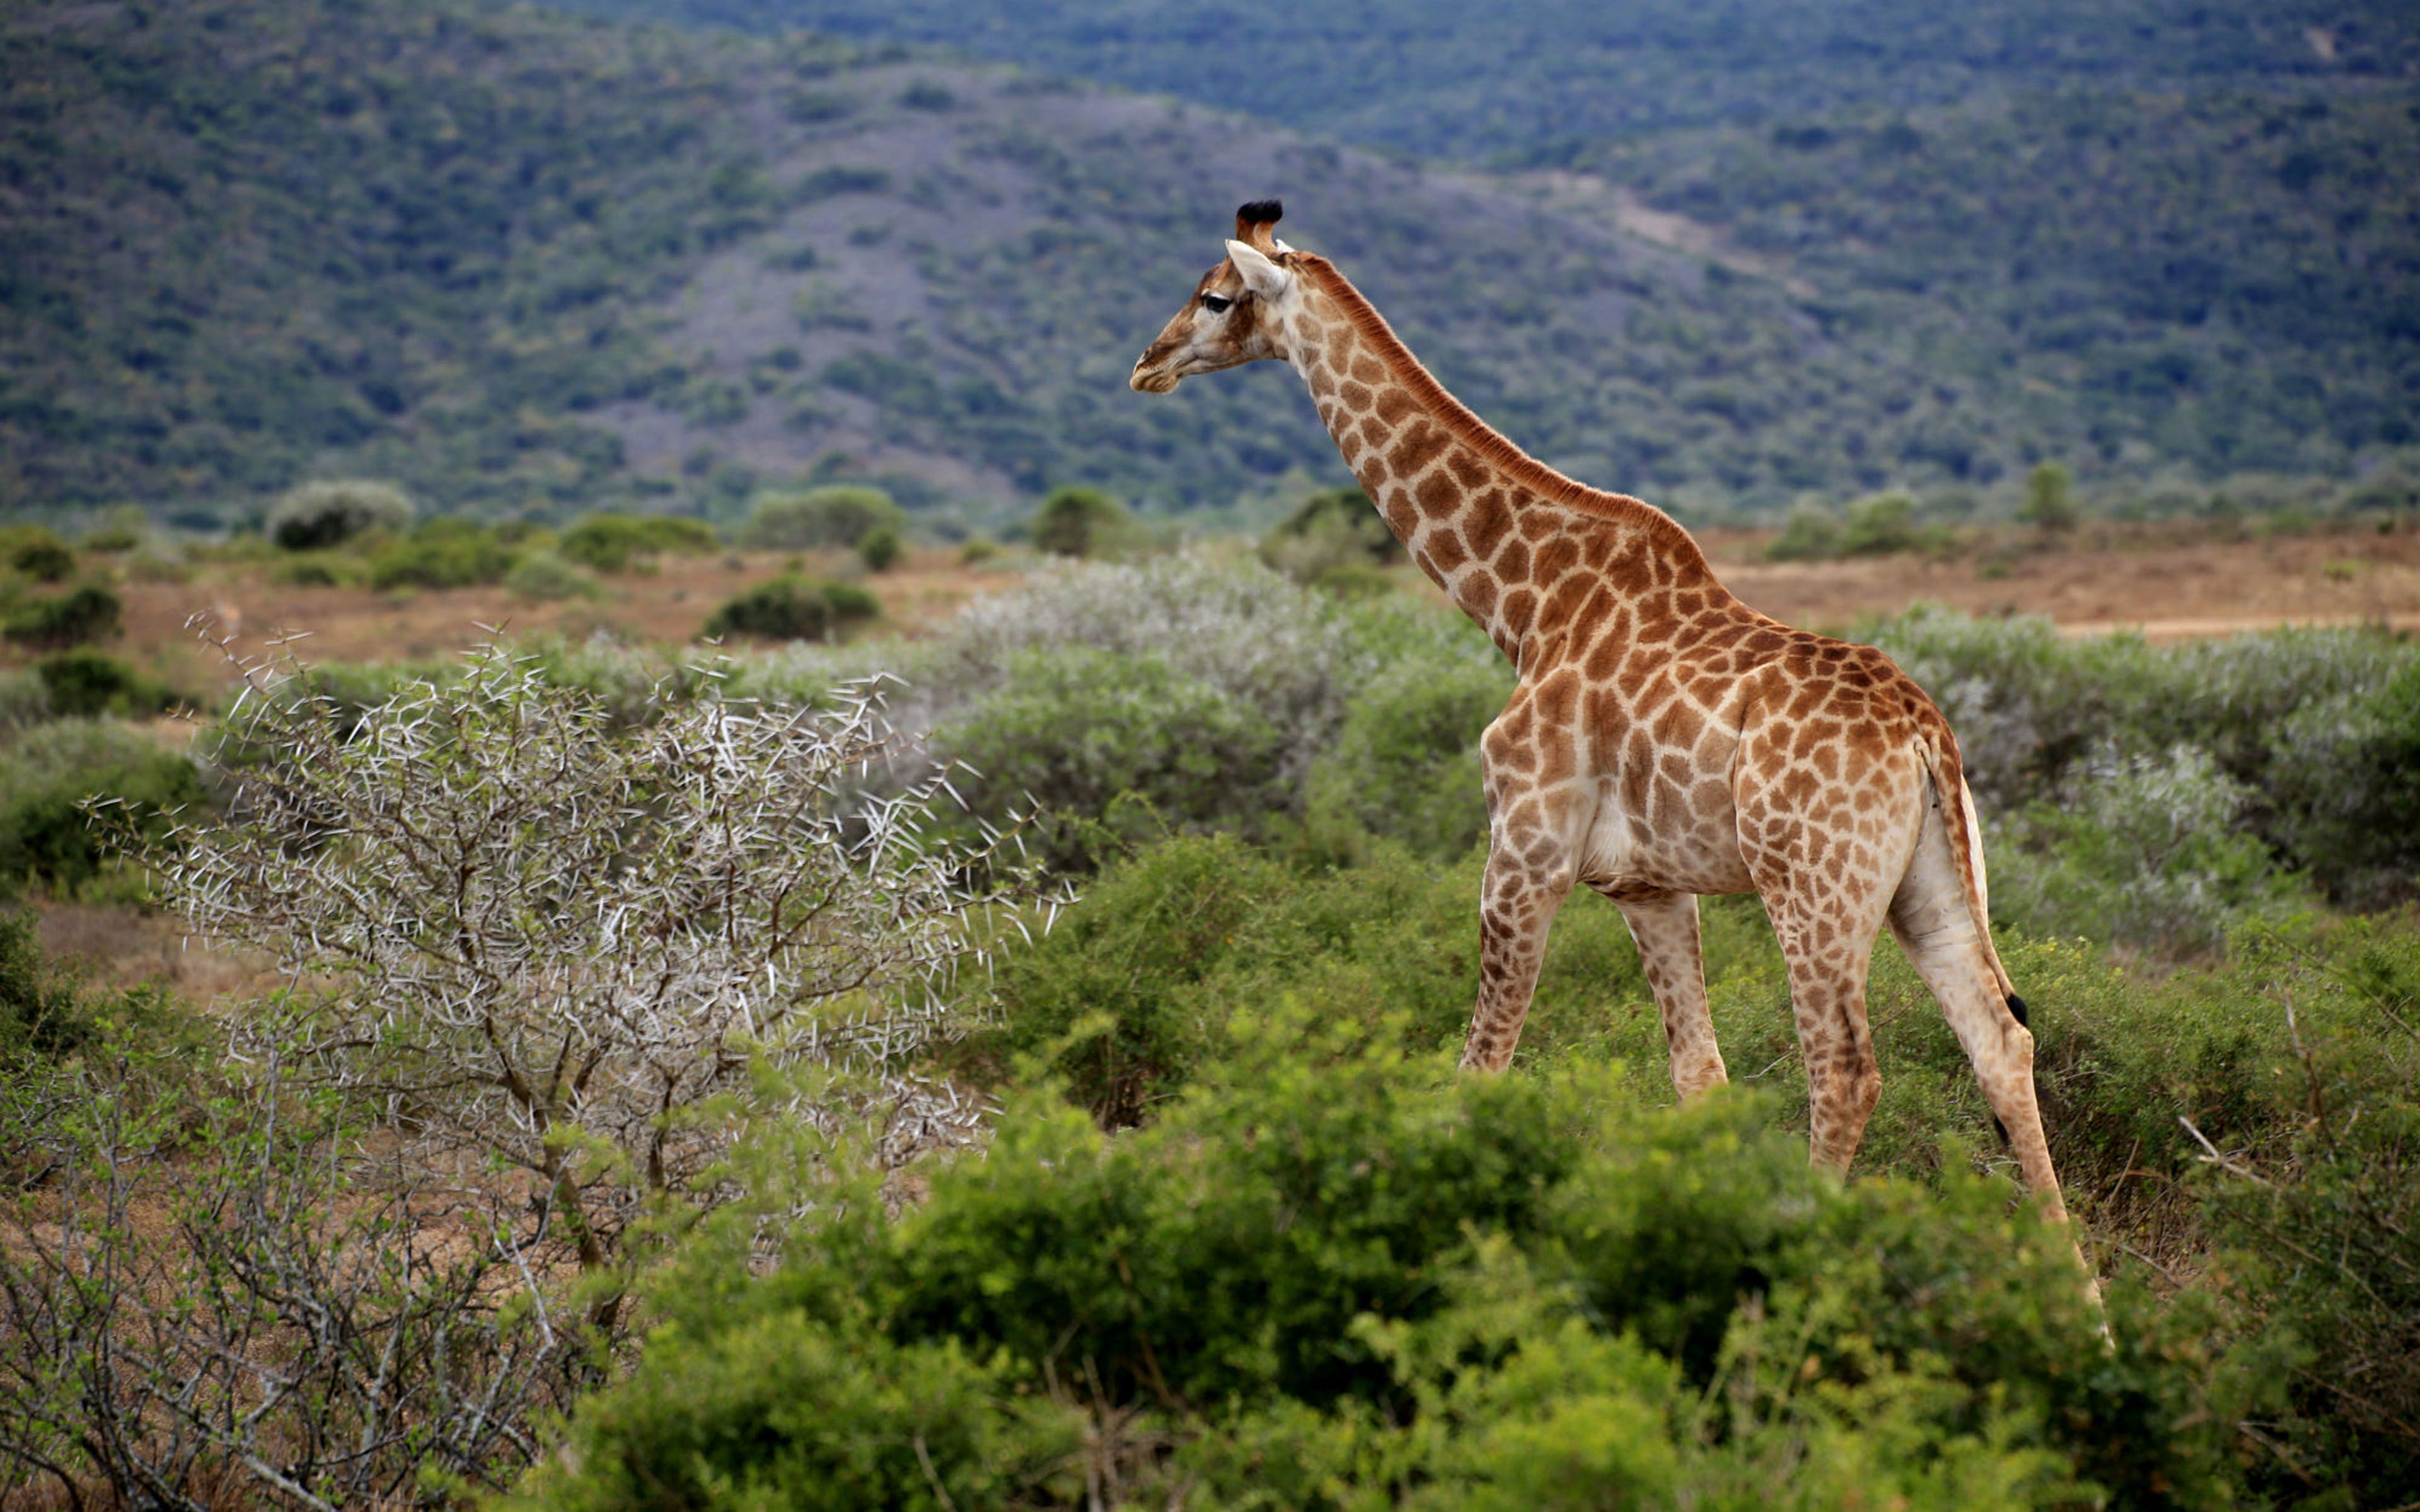 African Giraffe Makana Local Municipality South Africa 4k Ultra HD Tv Wallpaper For Deskx2400, Wallpaper13.com